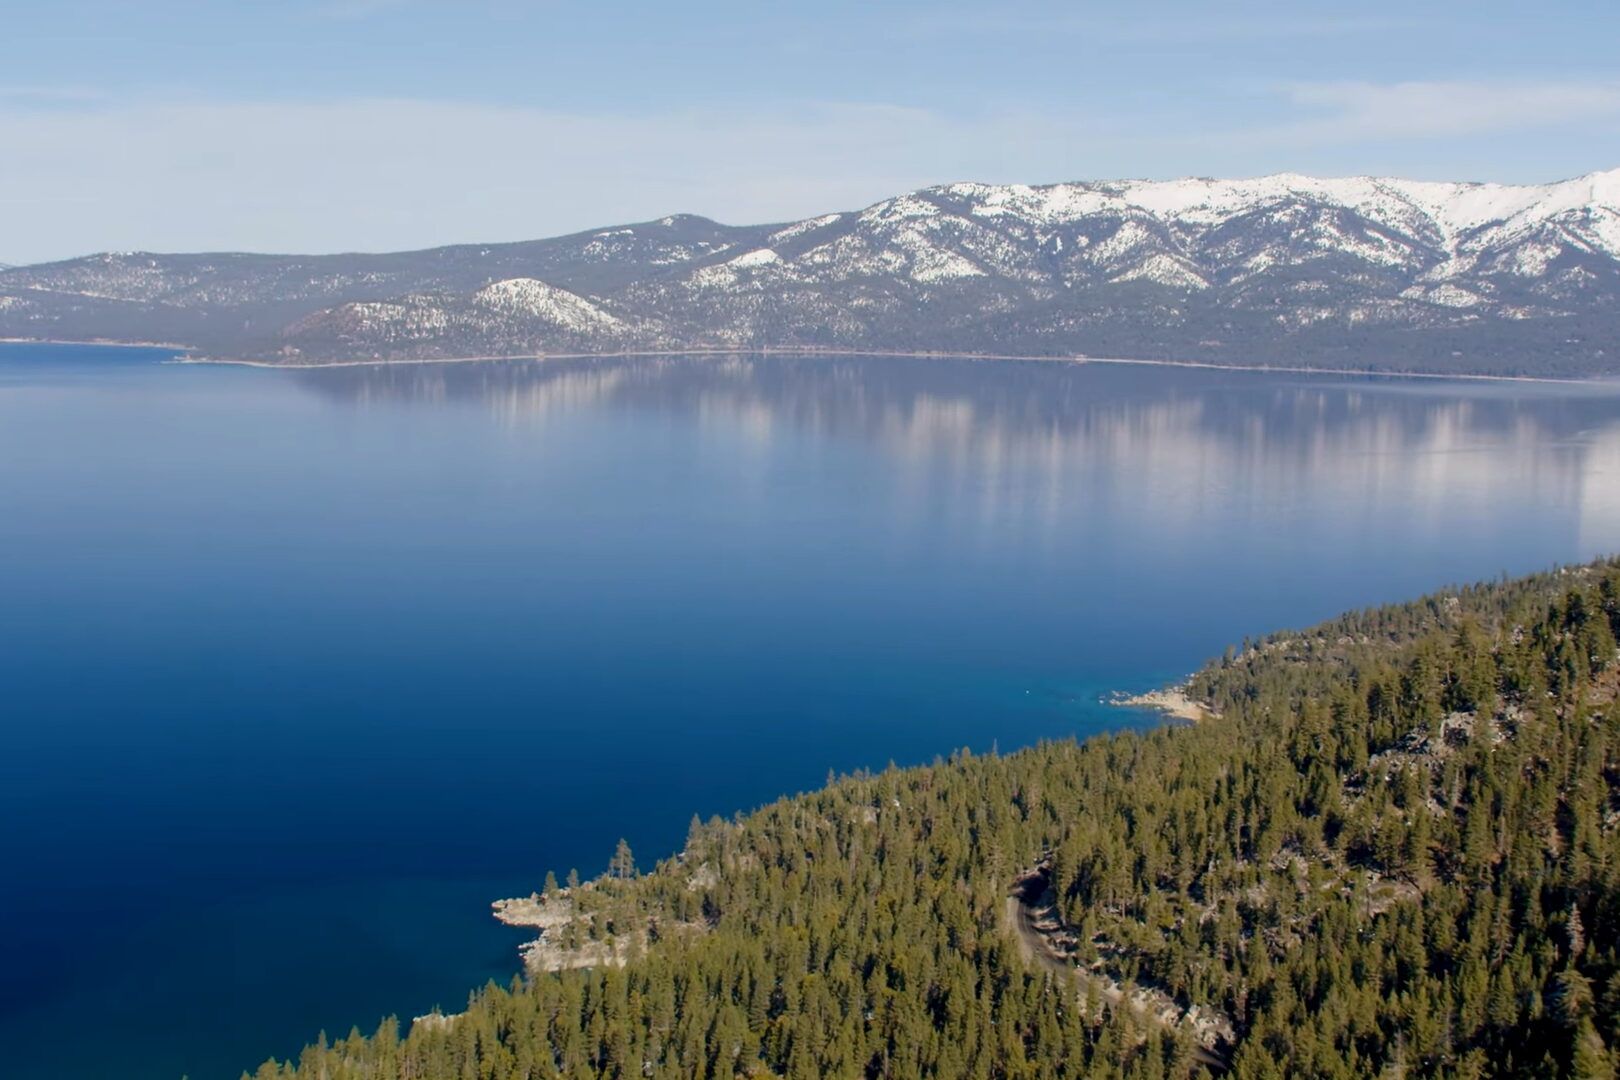 Lake Tahoe Vacation Resort